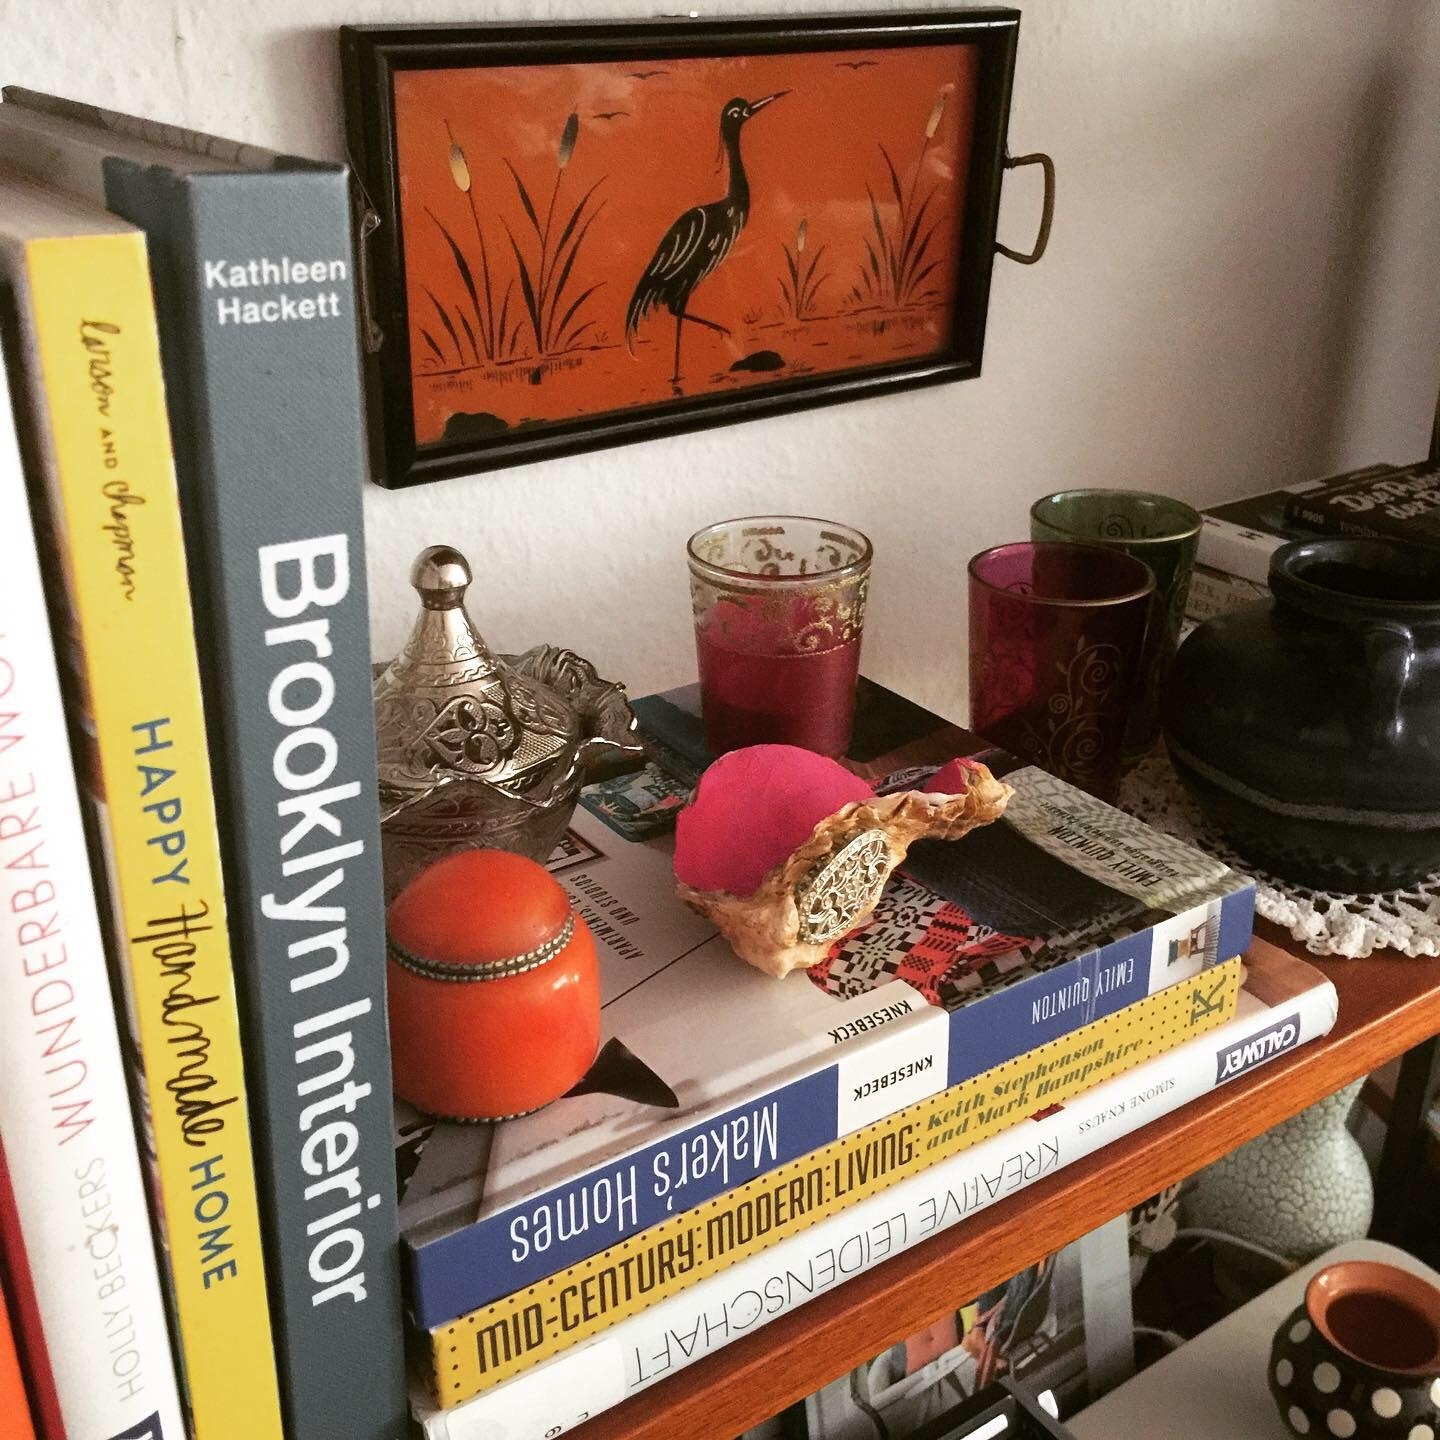 #Midcentury mein Bücherregal seit meiner Kindheit in der Familie #Bücher #DIY-Deko #retro